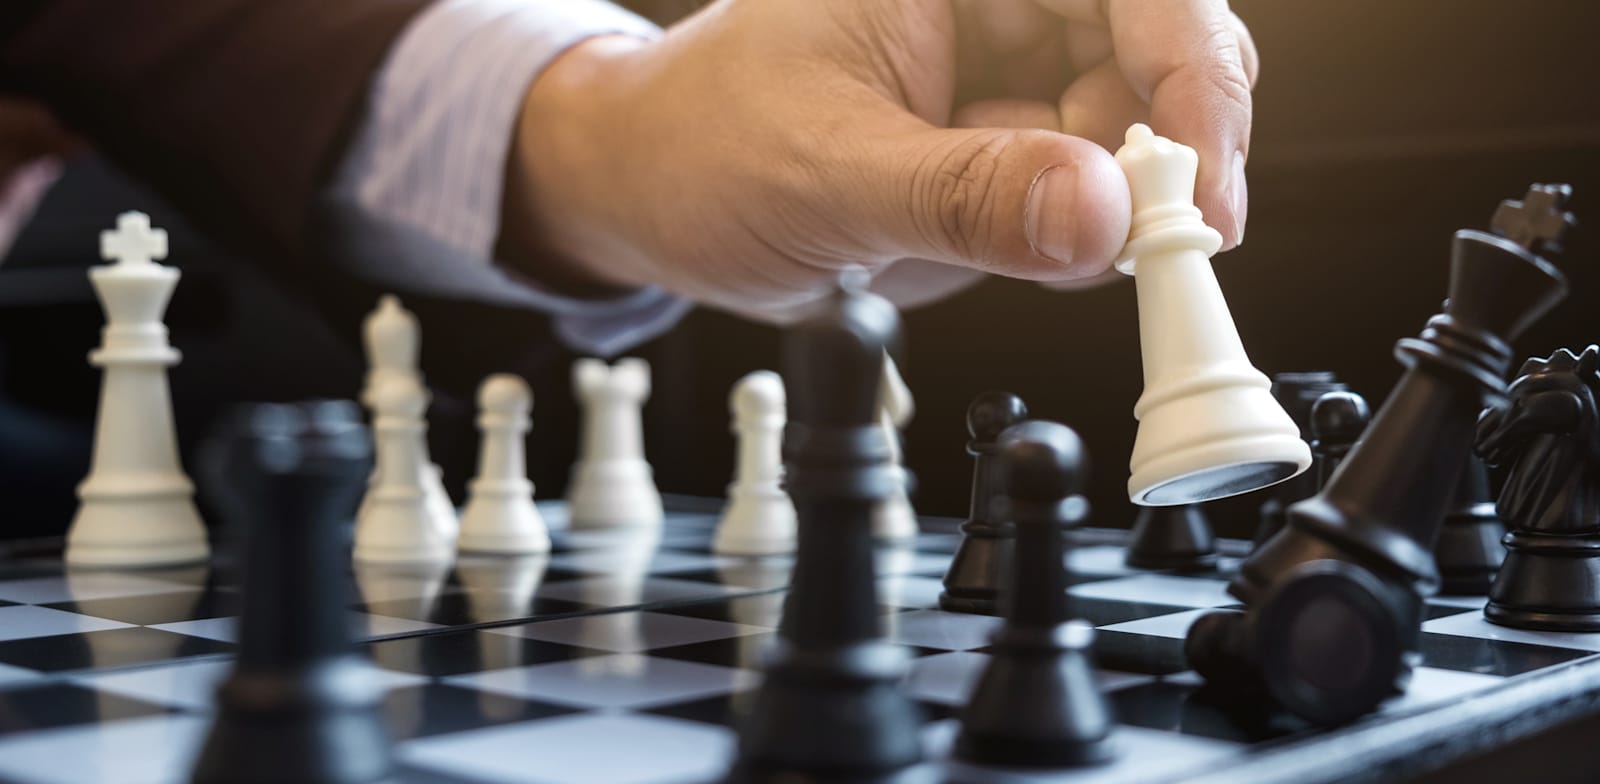 הכאוס בעולם השחמט נמשך / צילום: Shutterstock, Freedomz